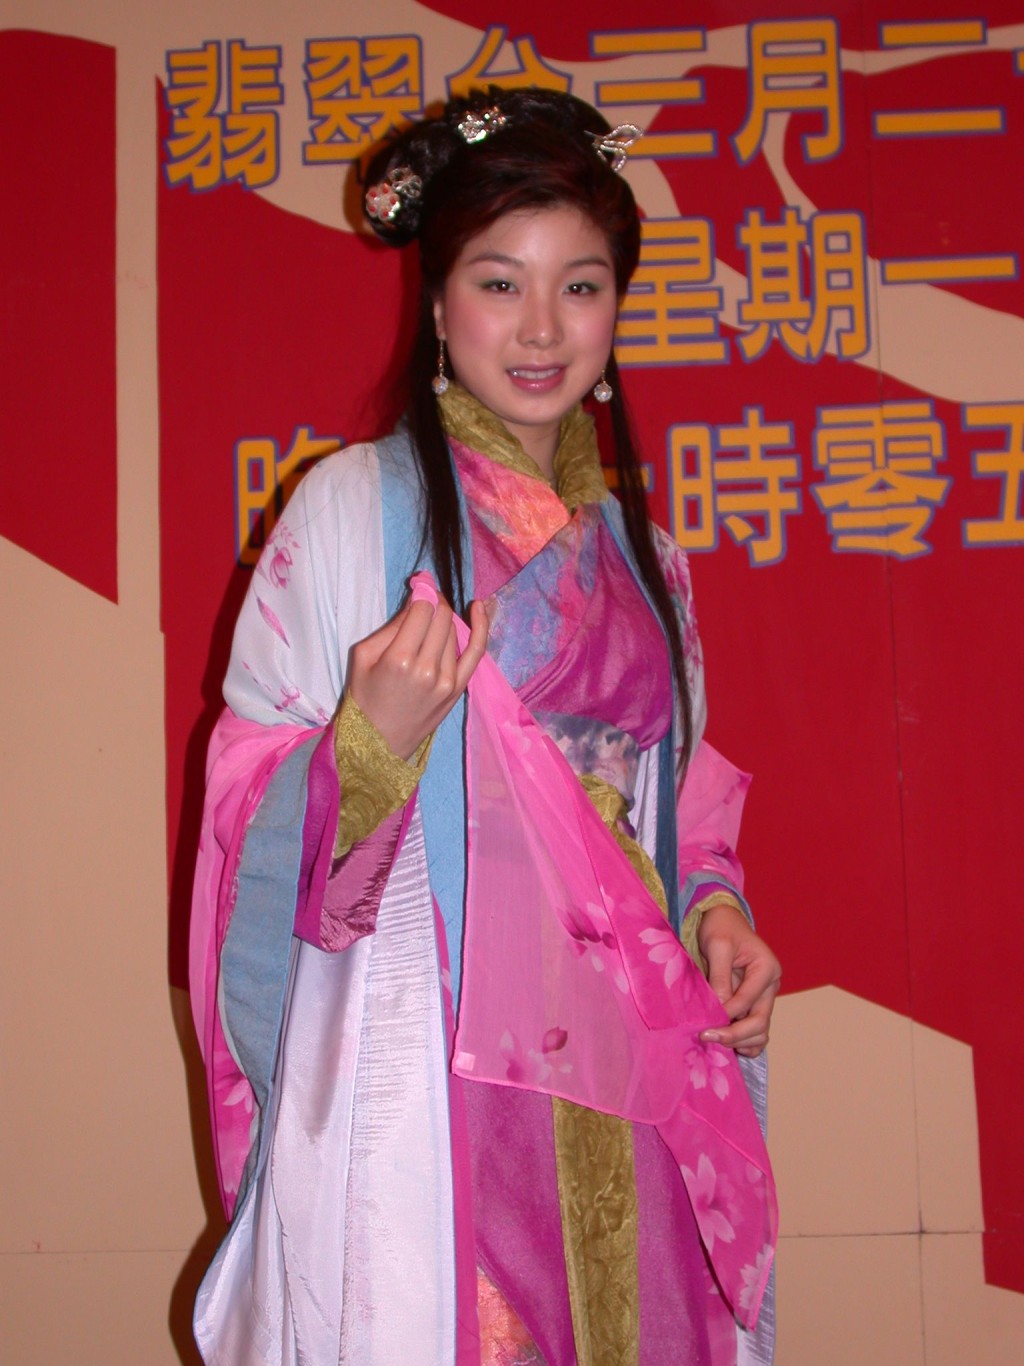 胡家惠签约TVB后主要担任主持工作。